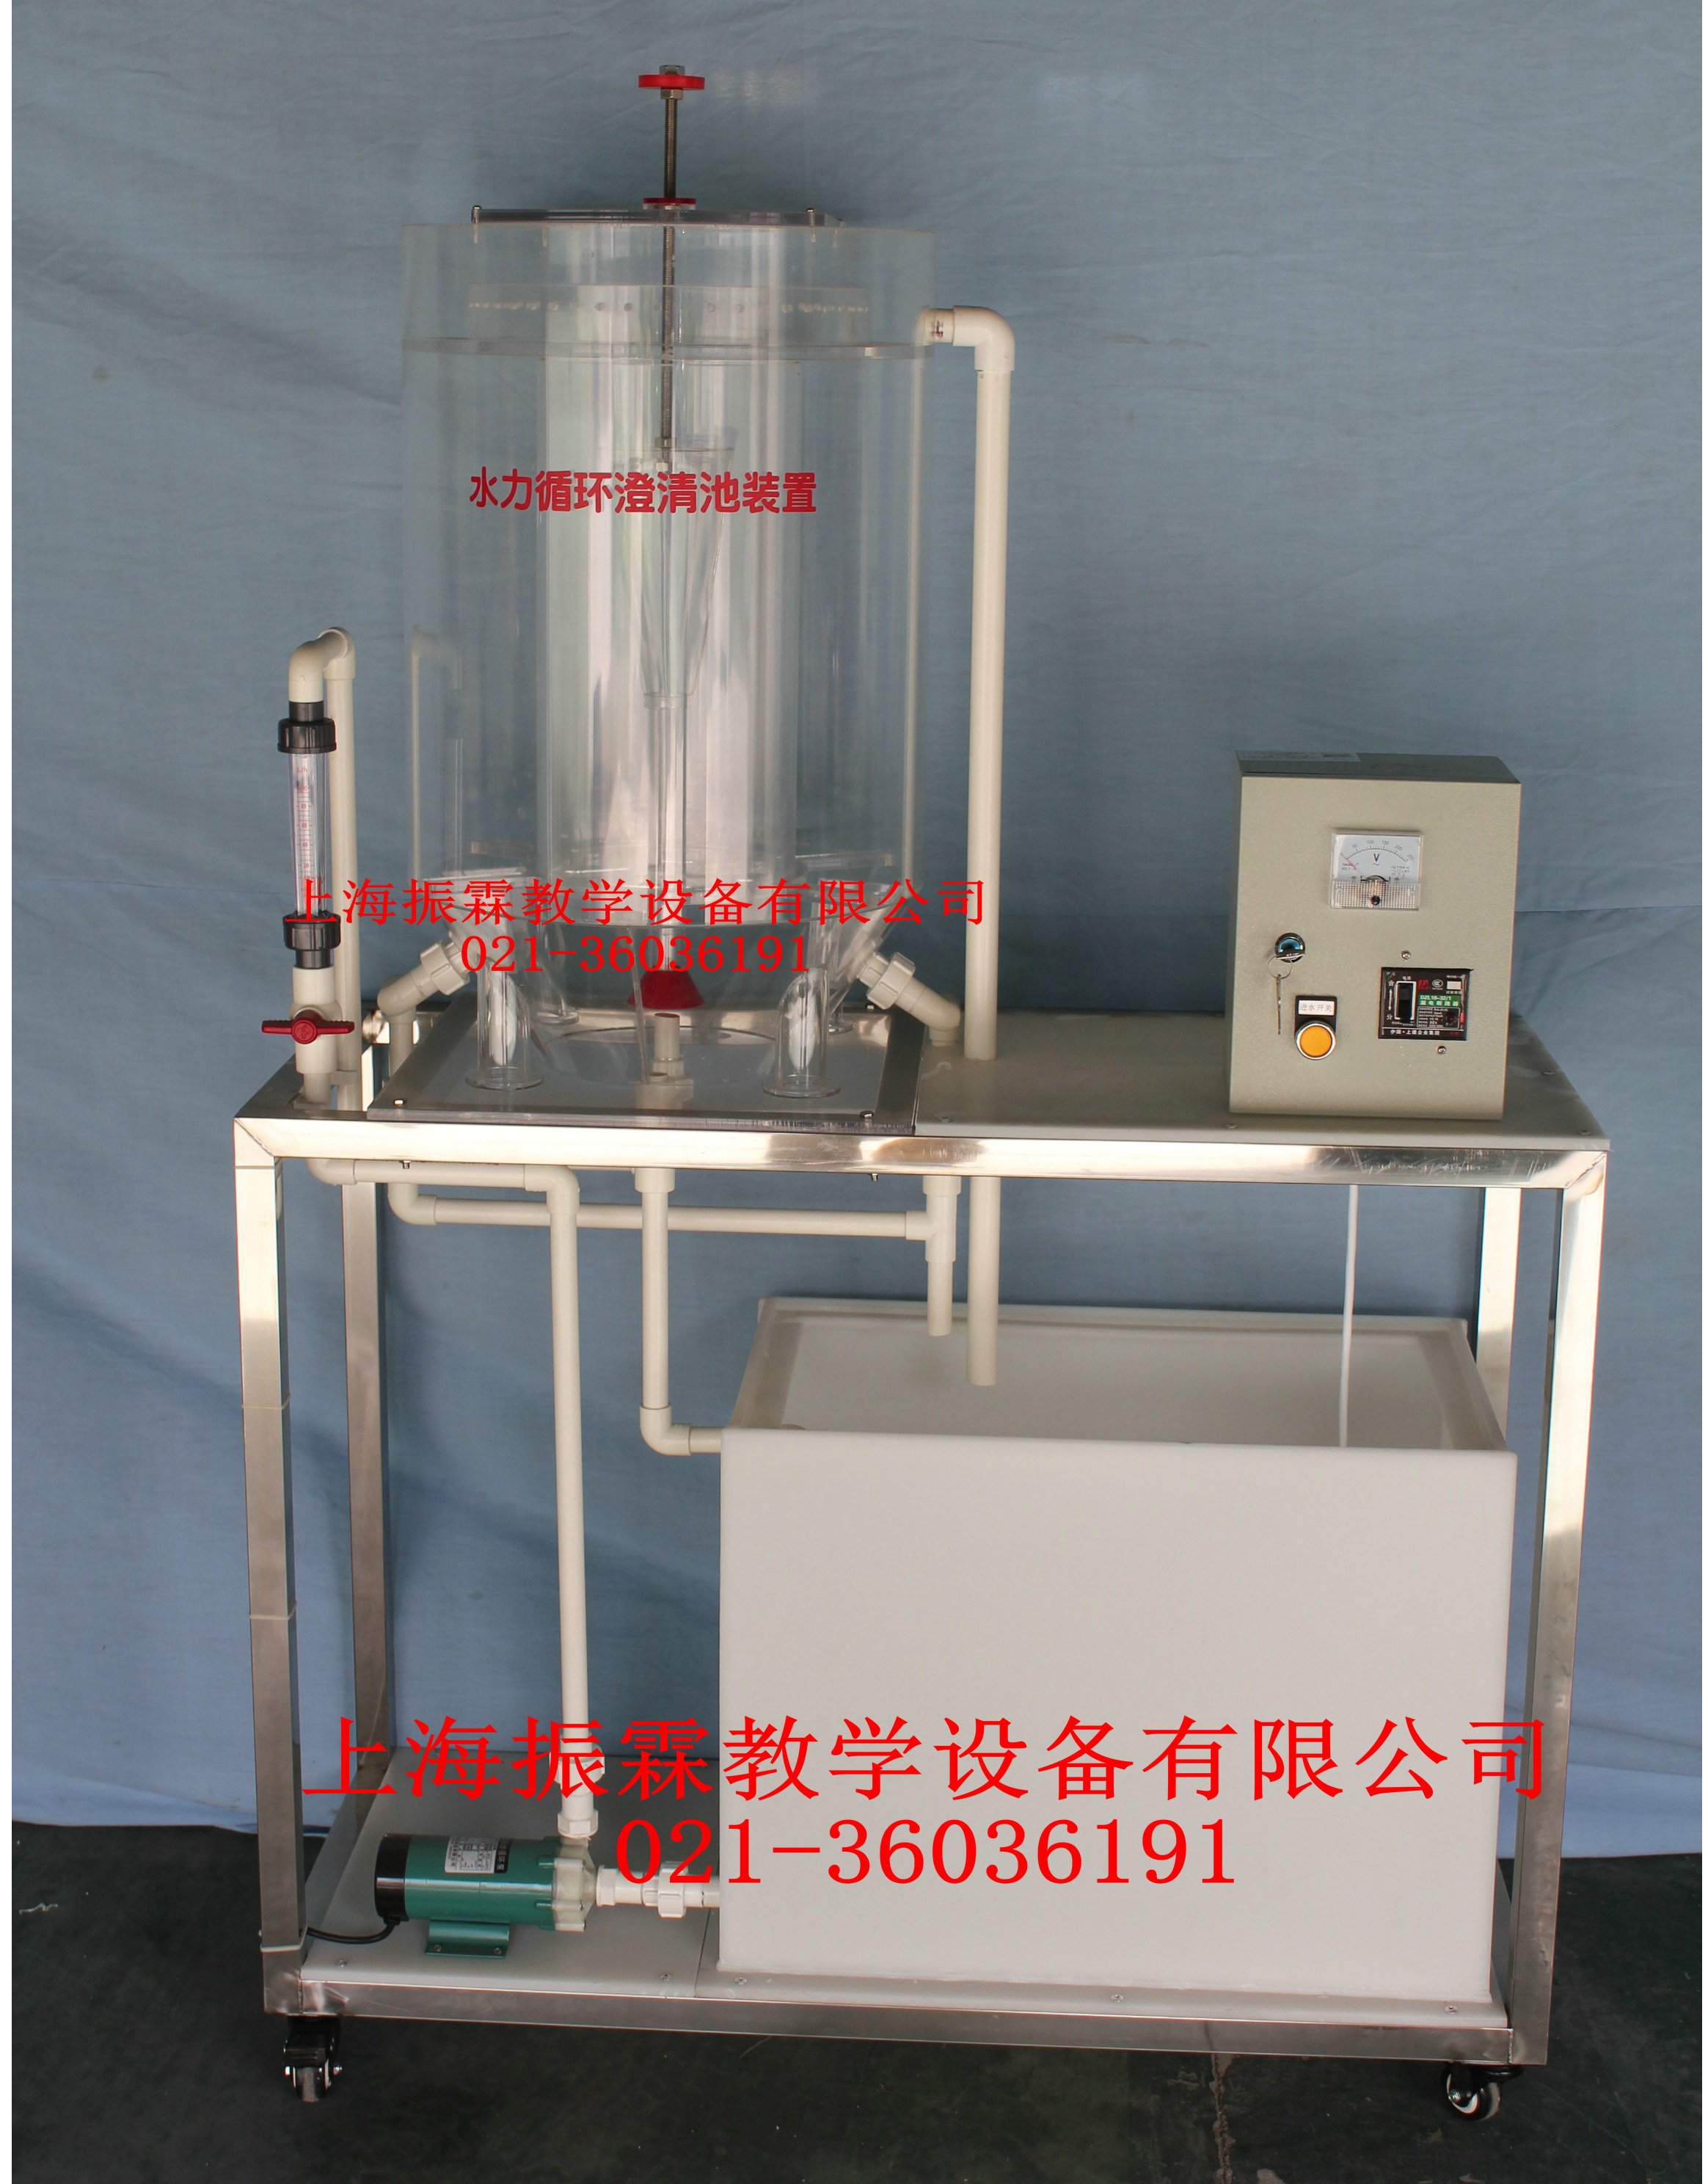 水力循环澄清池装置-水处理实验设备--上海振霖公司